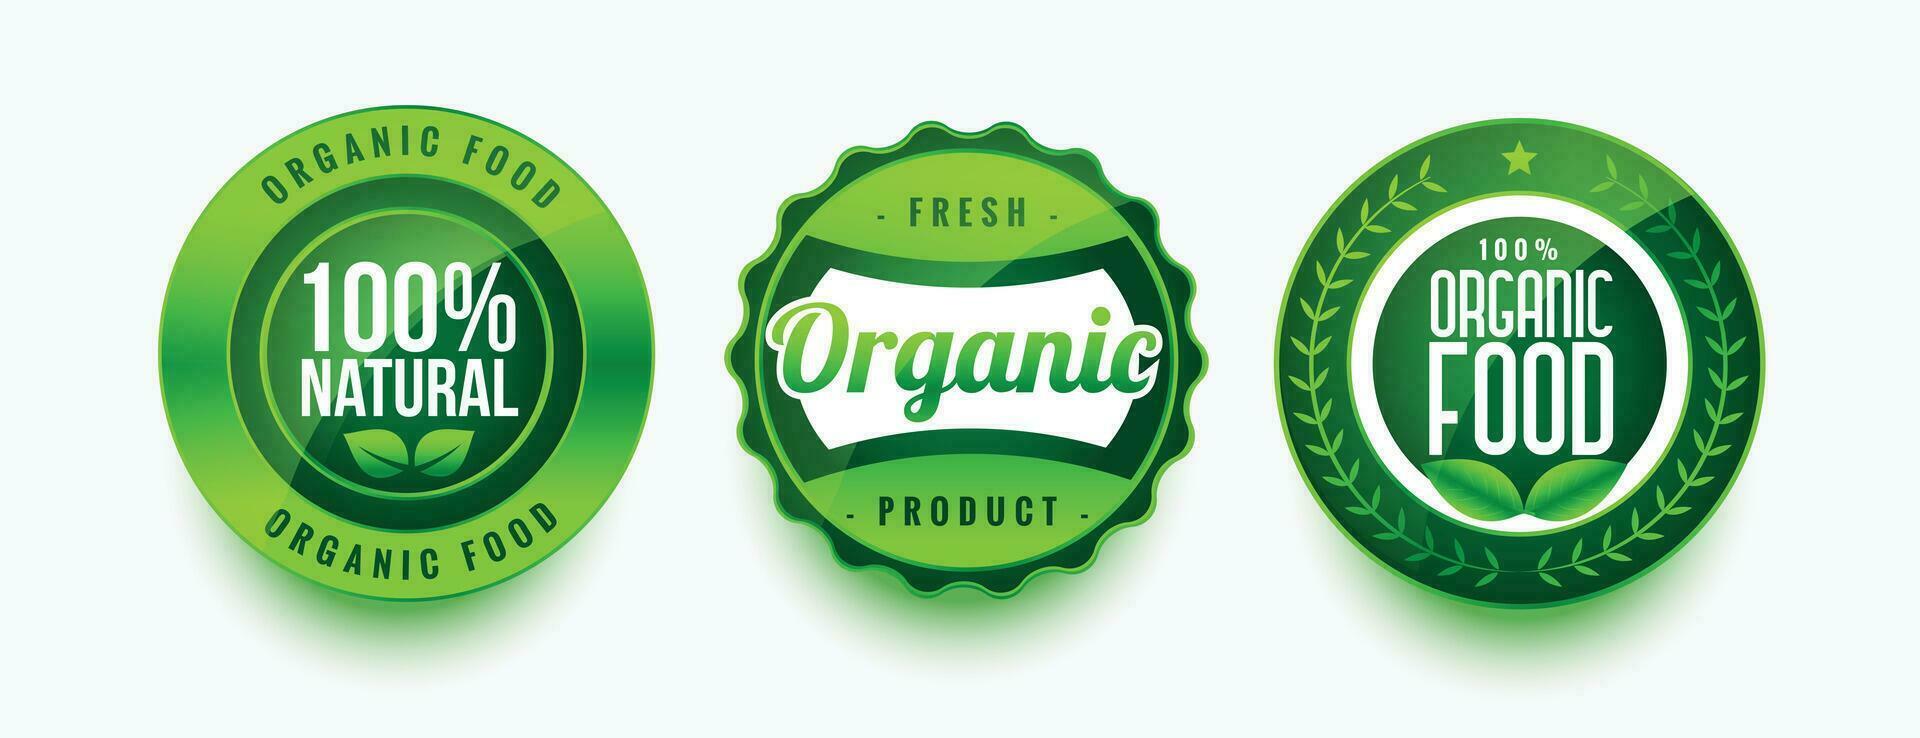 organisch frisch Essen Grün Etiketten einstellen vektor